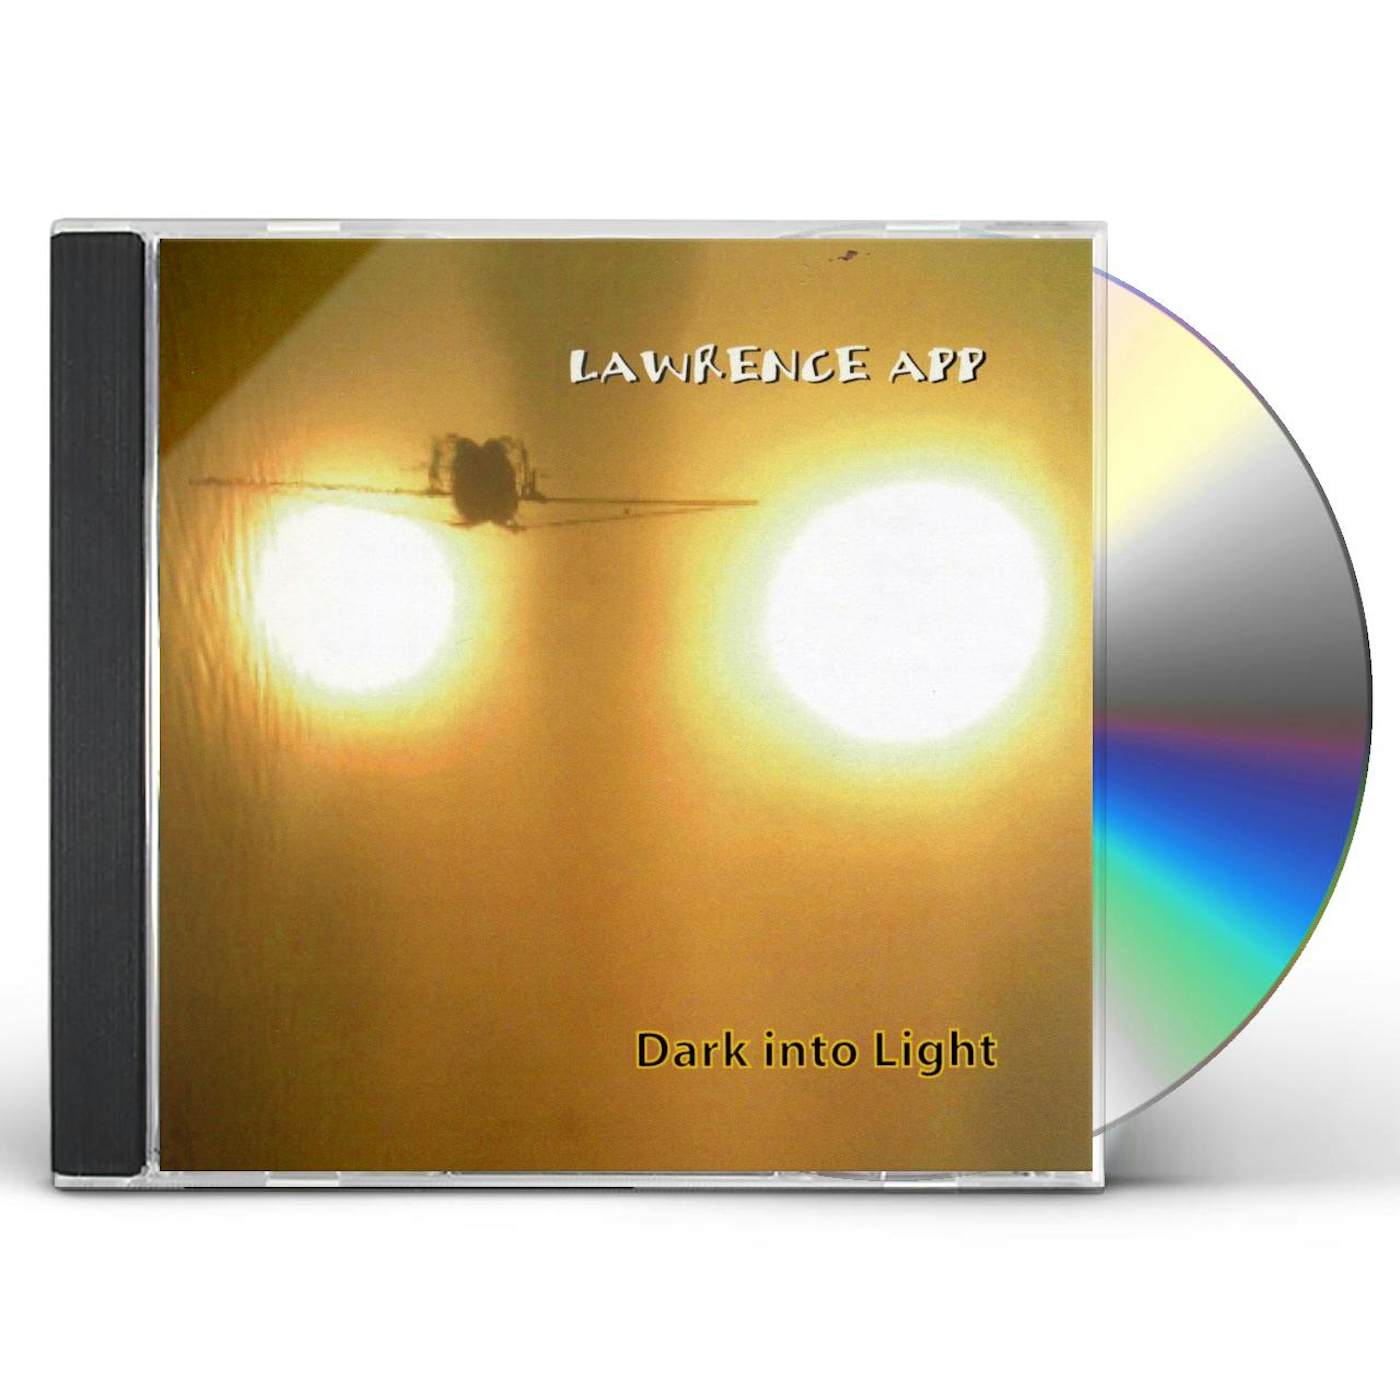 Lawrence App DARK INTO LIGHT CD